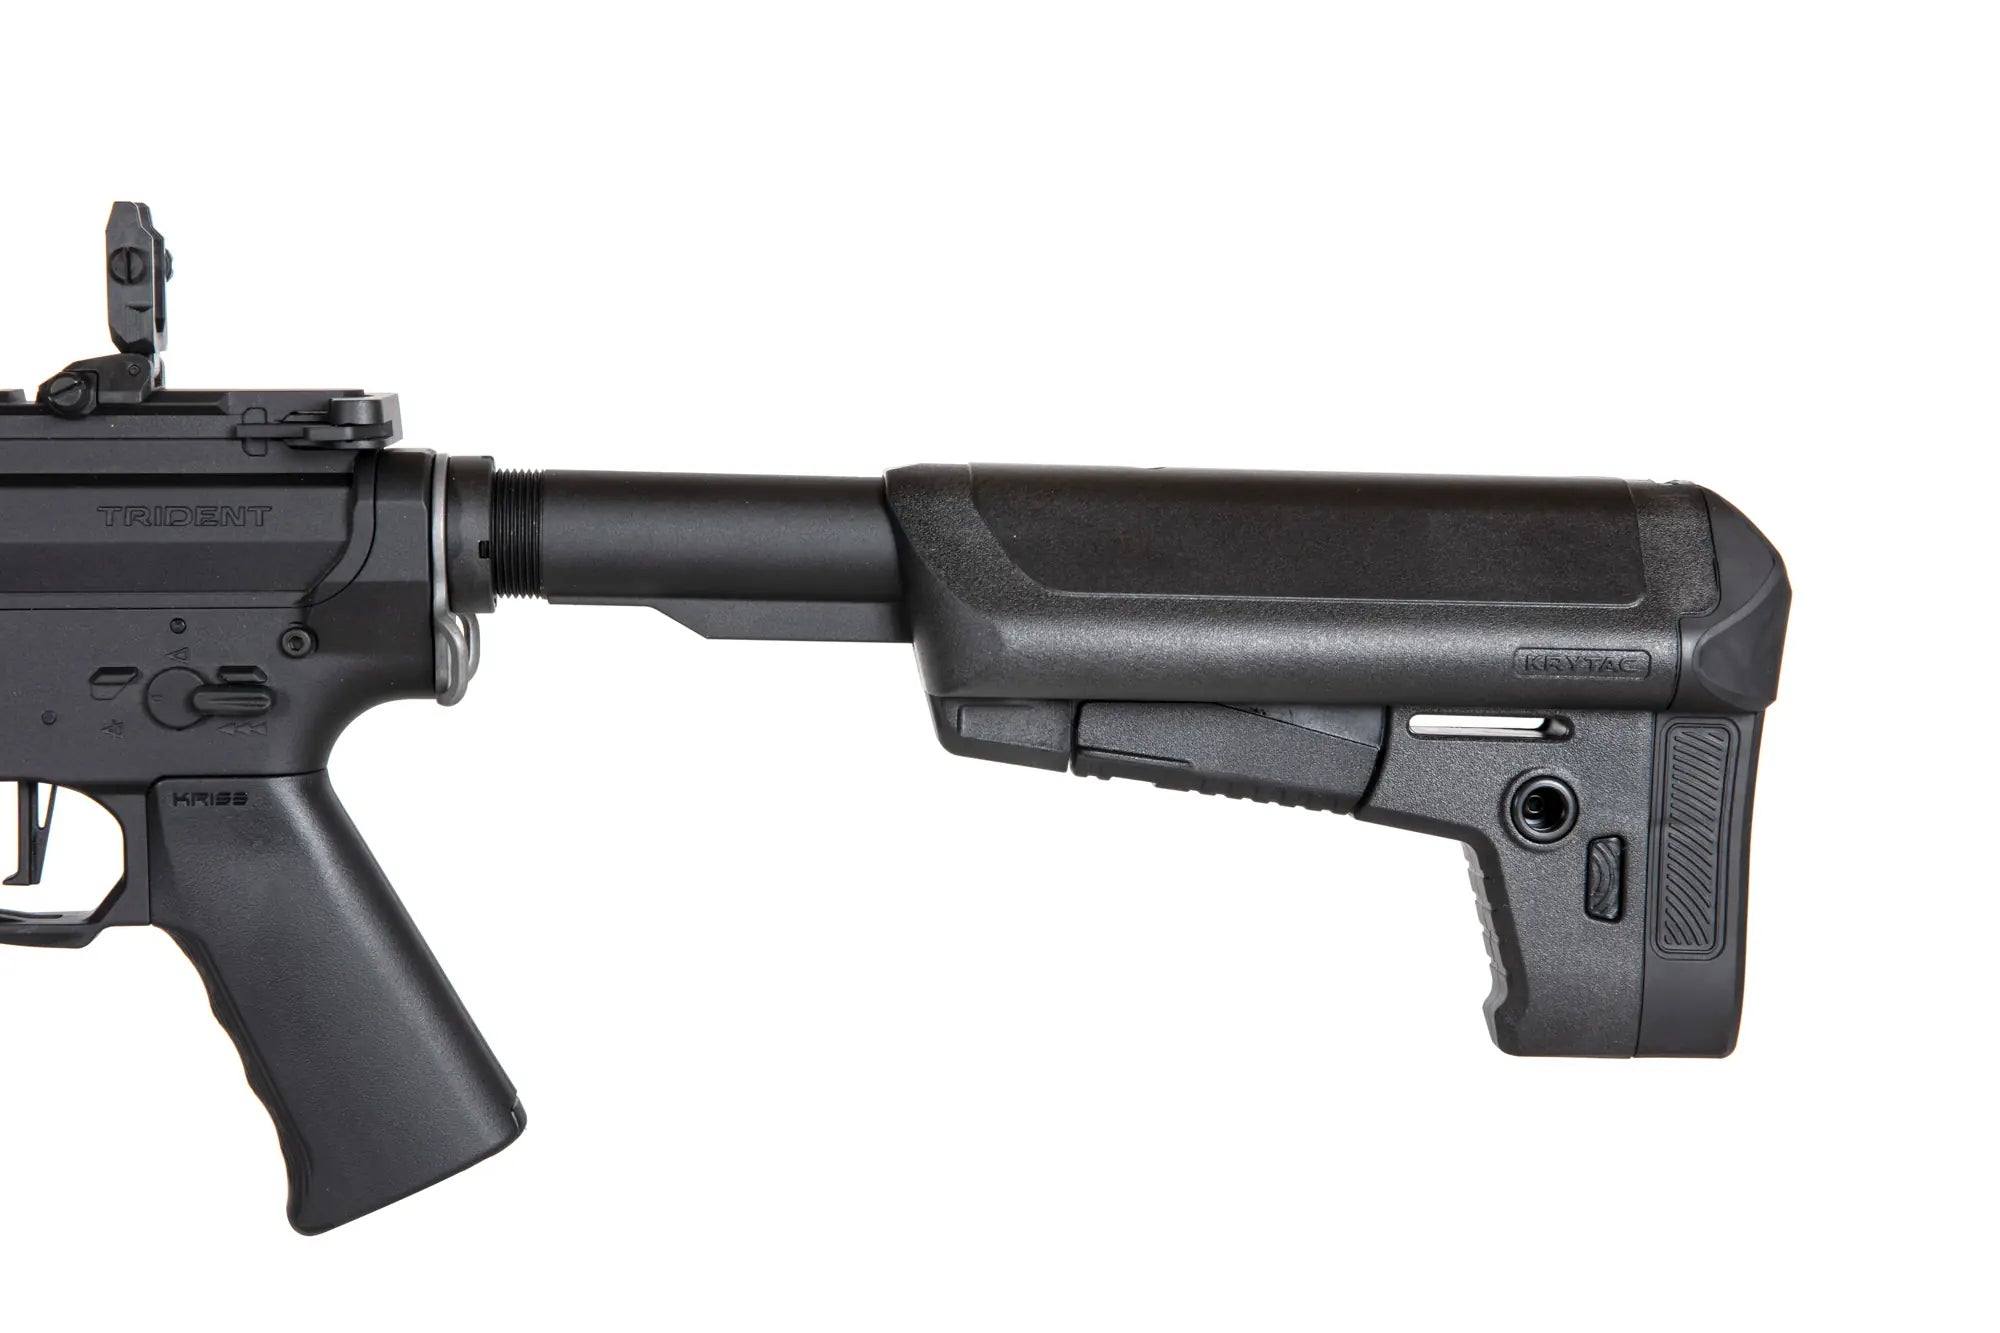 TRIDENT MK-II M SPR Airsoft DMR Rifle